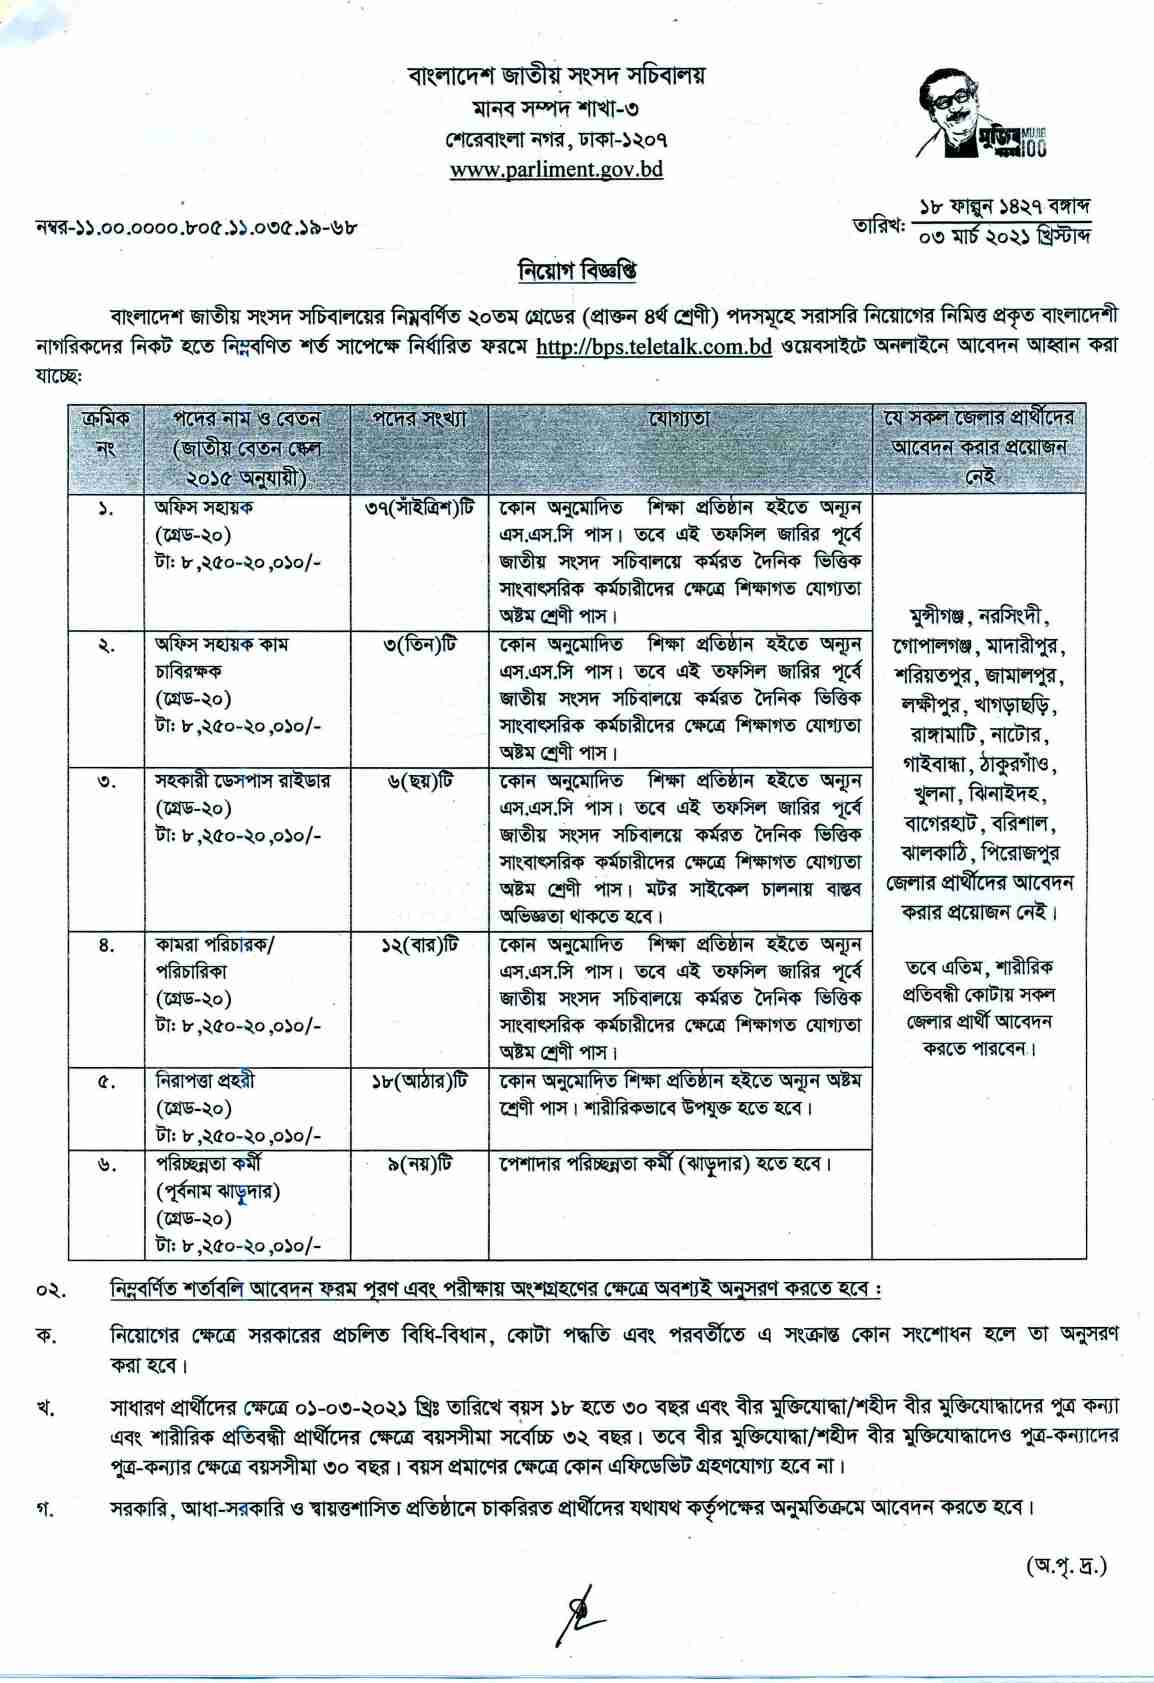 বাংলাদেশ জাতীয় সংসদ সচিবালয় নিয়োগ বিজ্ঞপ্তি ২০২১, বাংলাদেশ জাতীয় সংসদ সচিবালয় নিয়োগ বিজ্ঞপ্তি, বাংলাদেশ জাতীয় সংসদ সচিবালয় চাকরির খবর ২০২১, বাংলাদেশ জাতীয় সংসদ সচিবালয় বিপিএস জব সার্কুলার 2021, Bangladesh National Parliament Secretariat job circular 2021, Bangladesh Parliament Secretariat (BPS) Job Circular 2021, BPS Job Circular, bangladesh jatiyo songsod socibaloy niyog boggopti